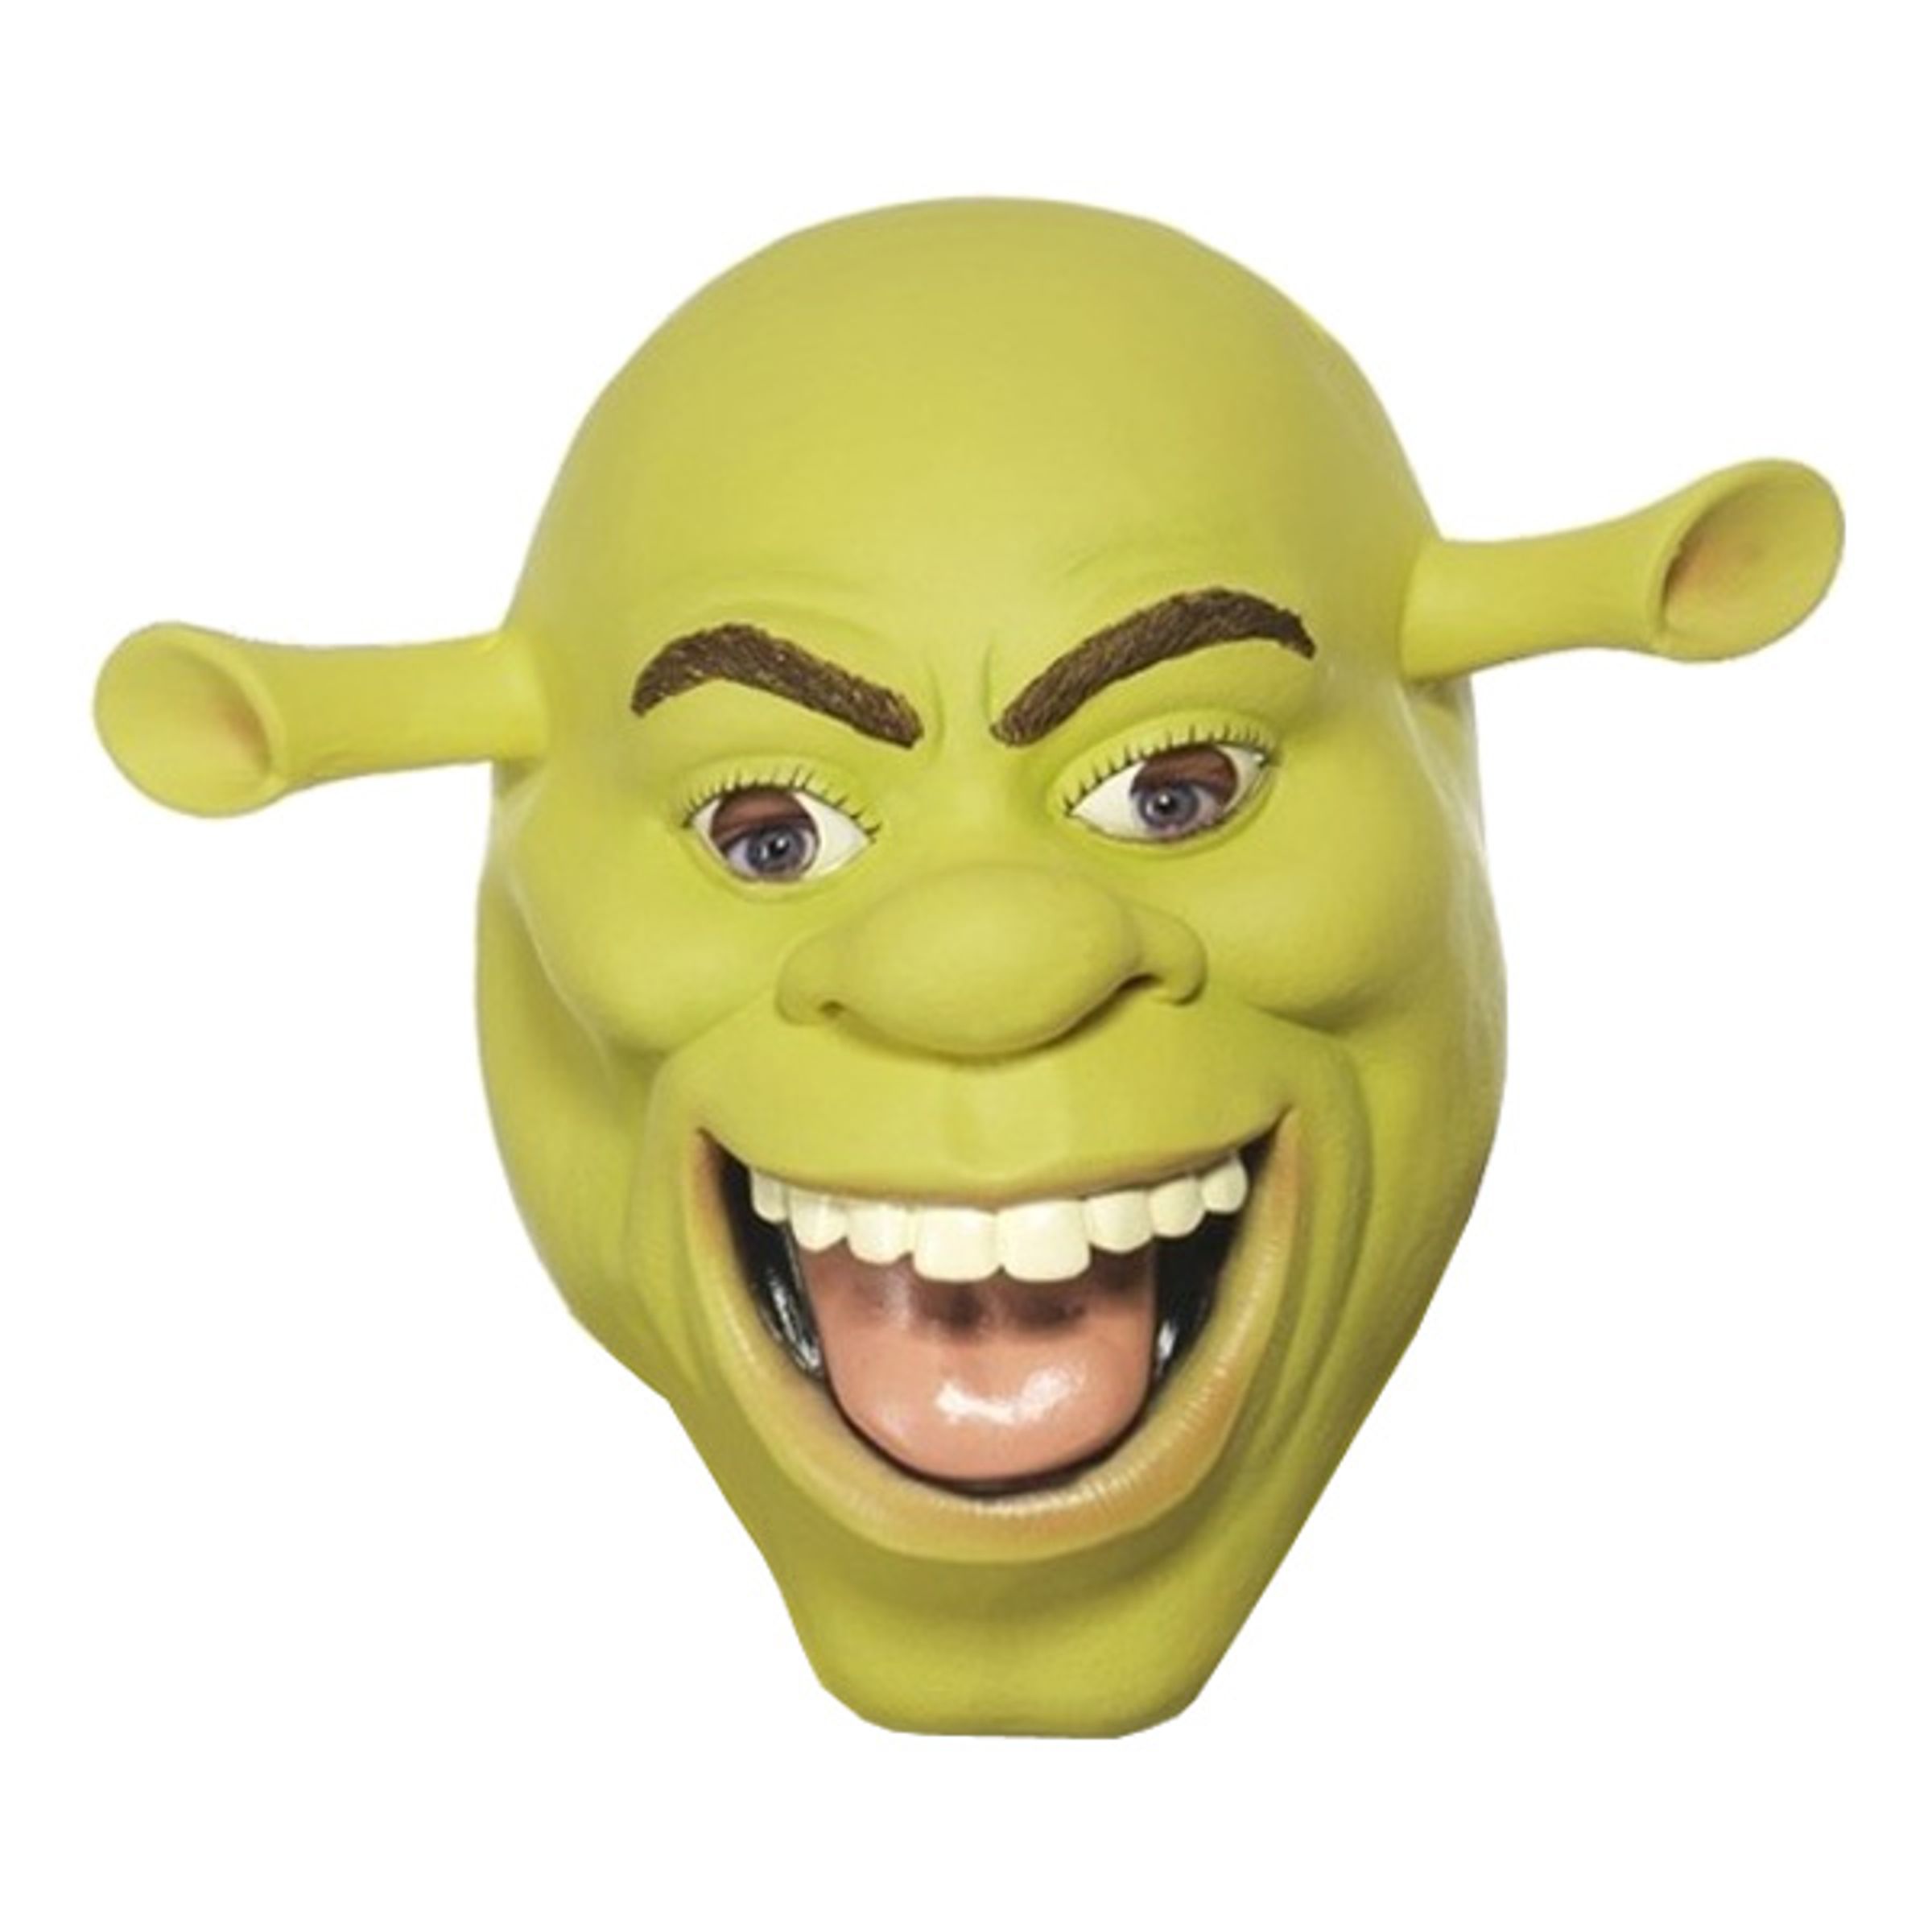 Shrek Latexmask - One size